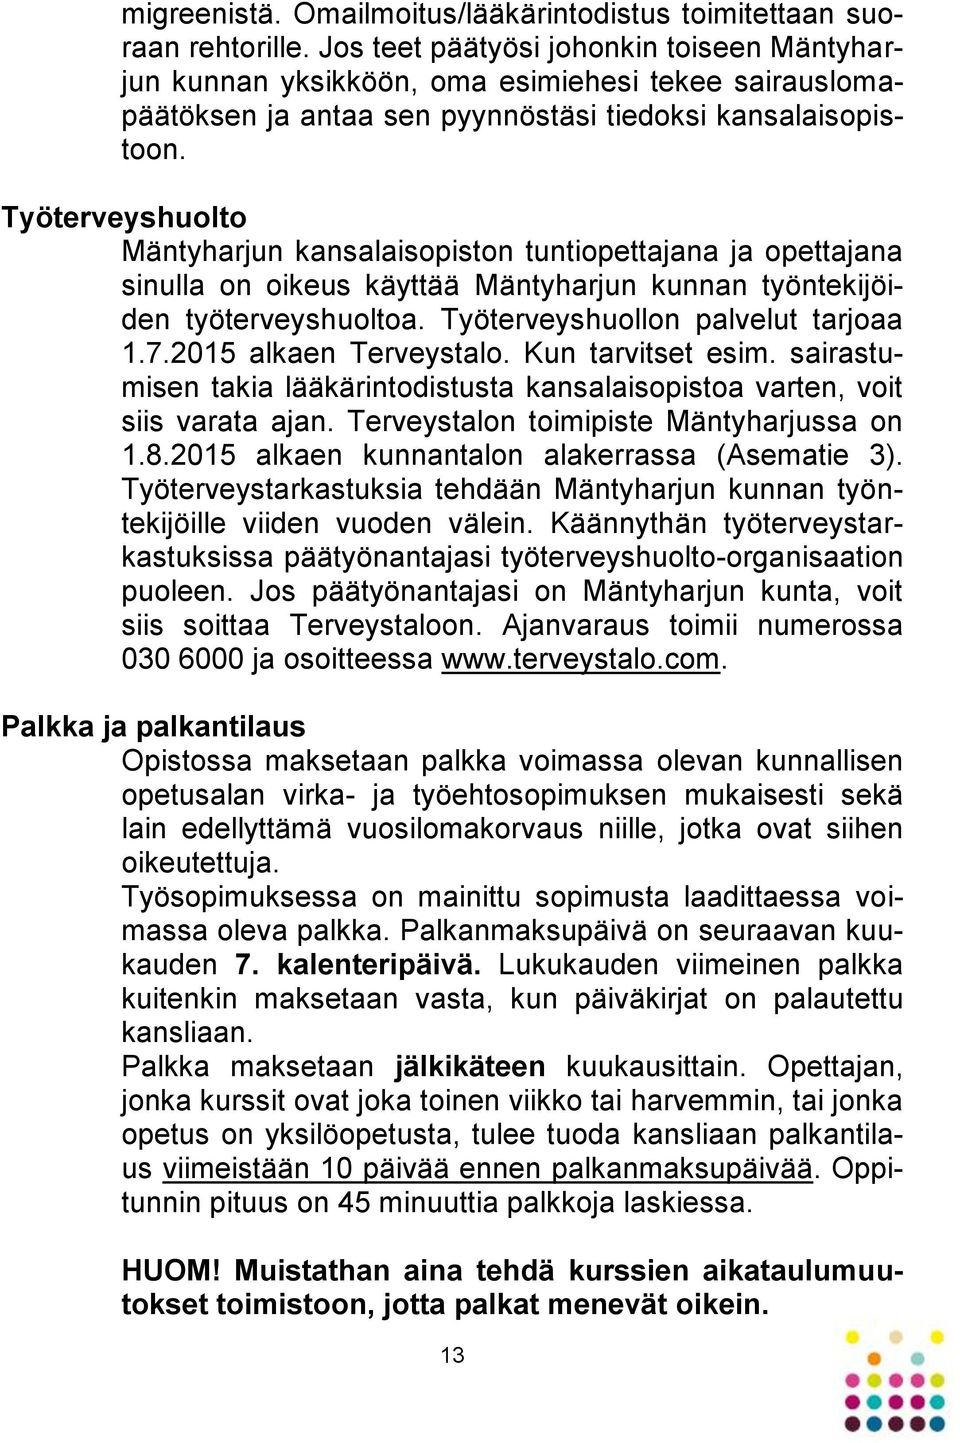 Työterveyshuolto Mäntyharjun kansalaisopiston tuntiopettajana ja opettajana sinulla on oikeus käyttää Mäntyharjun kunnan työntekijöiden työterveyshuoltoa. Työterveyshuollon palvelut tarjoaa 1.7.